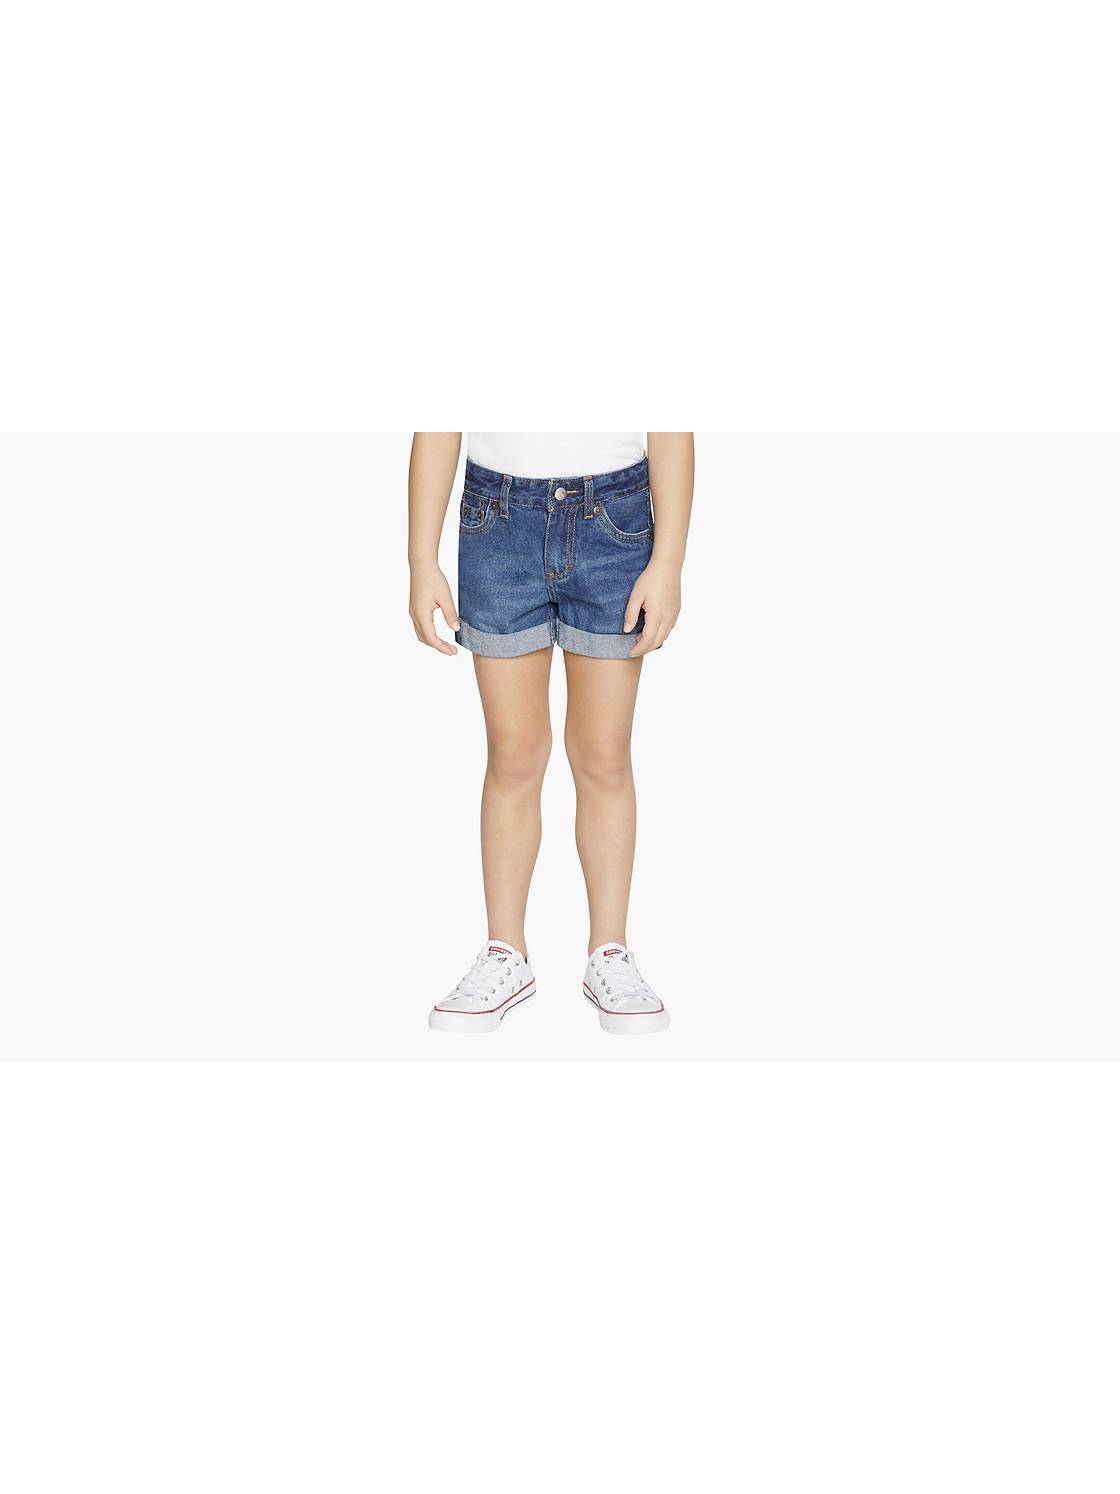 Girls' Shorts, Girls' Denim Shorts & Skorts